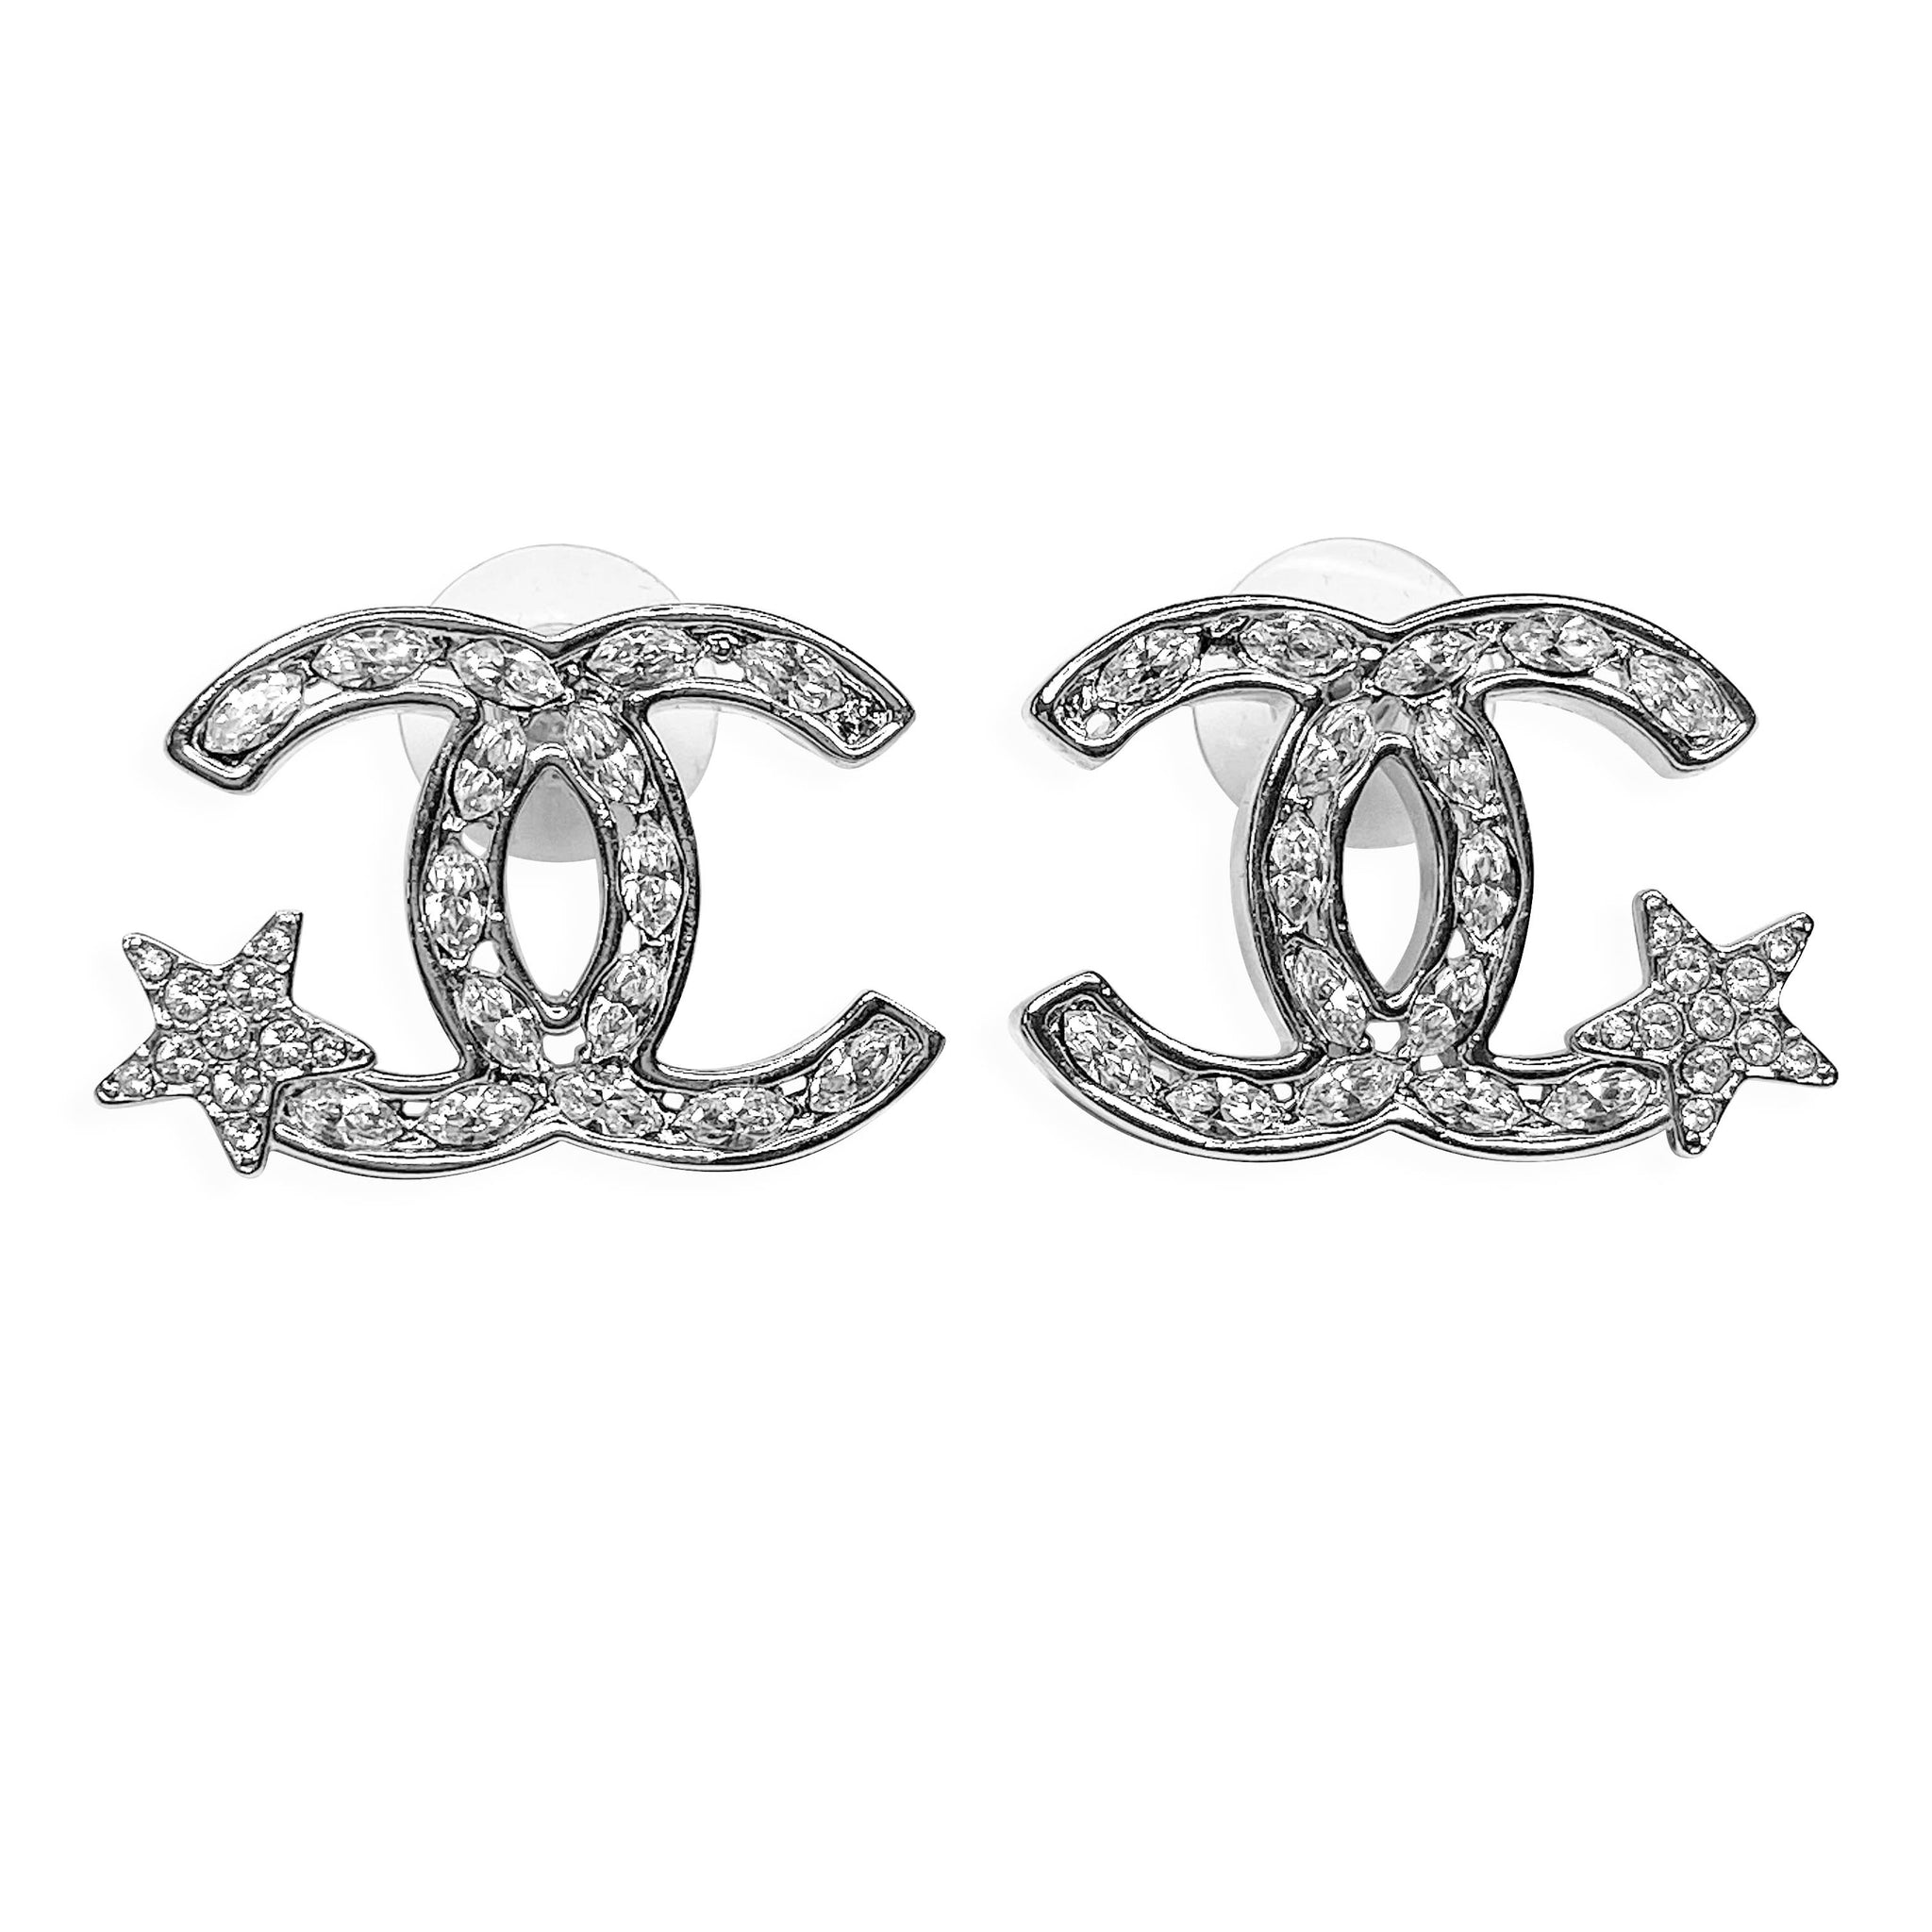 Chanel Star Crystal Cc Logo Large Stud Earrings Dearluxe